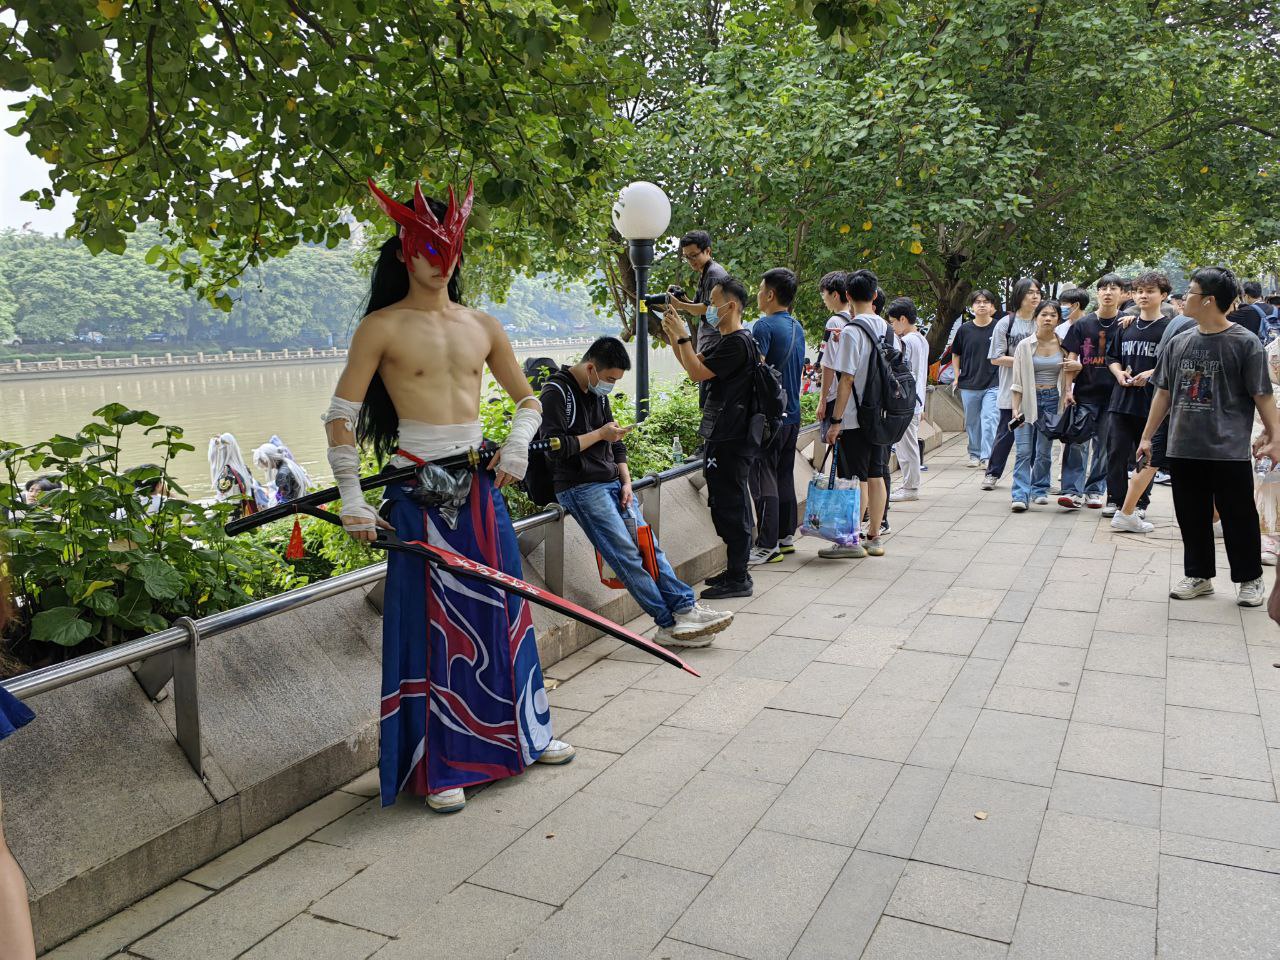 在河边休息、演出、摄影、“亲切问候”的人群——在北京是绝对见不到如此有生活感的场景的